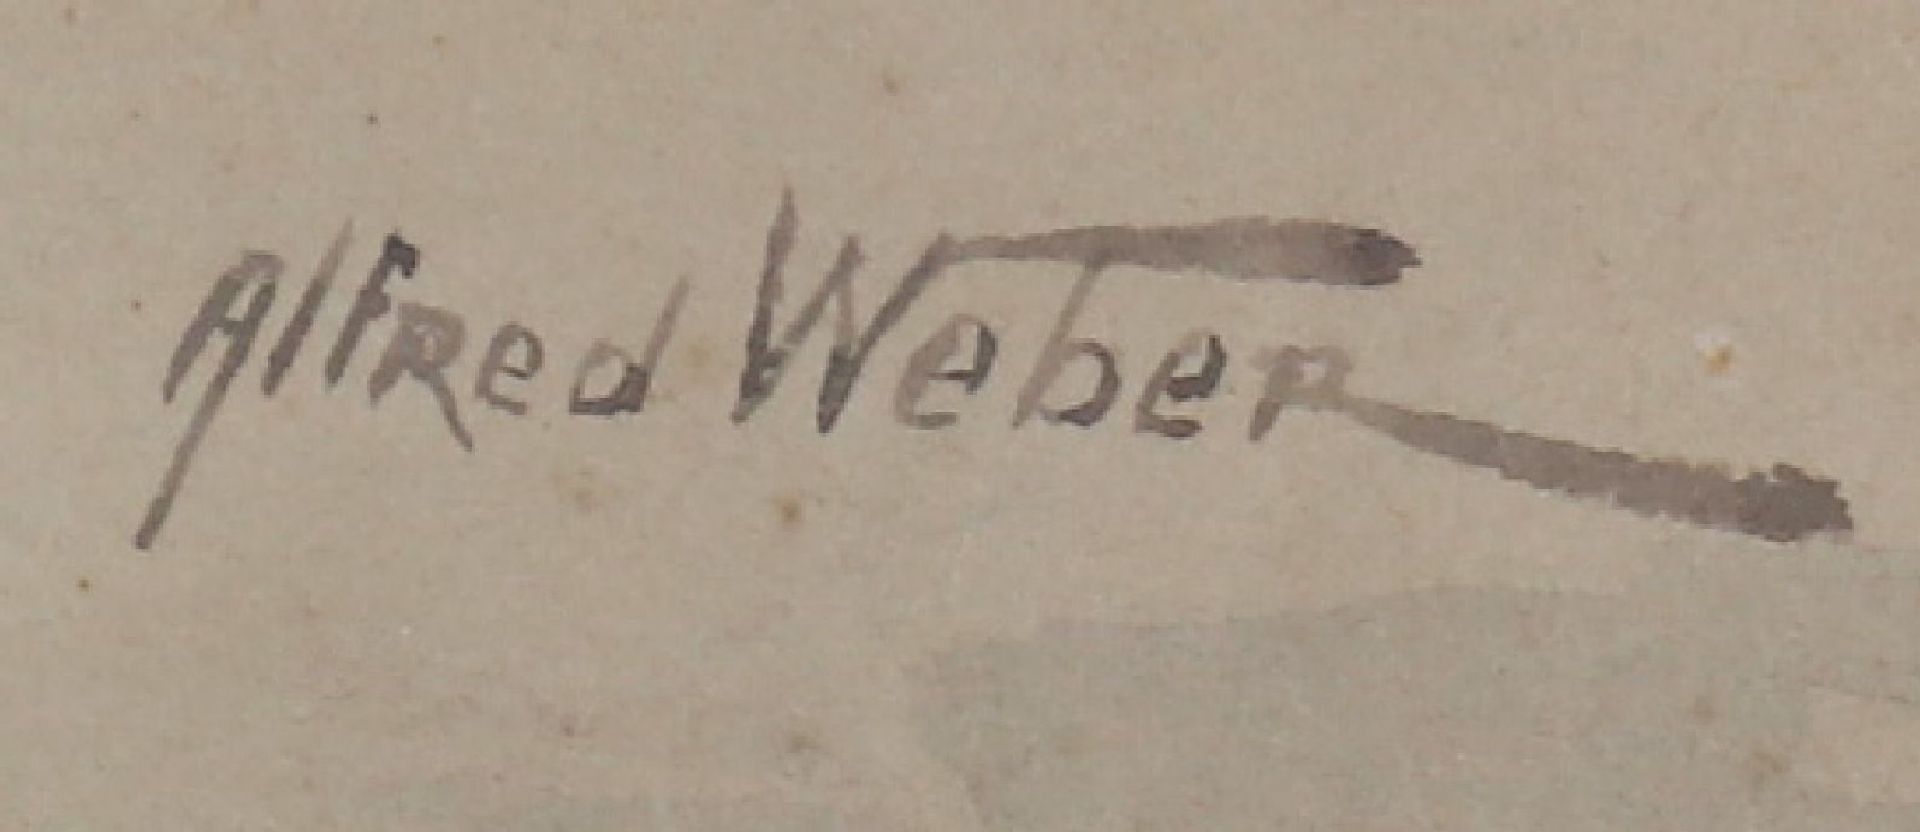 ALFRED WEBER (1859 Schaffhausen - 1931 Diessenhofen) - Image 3 of 3